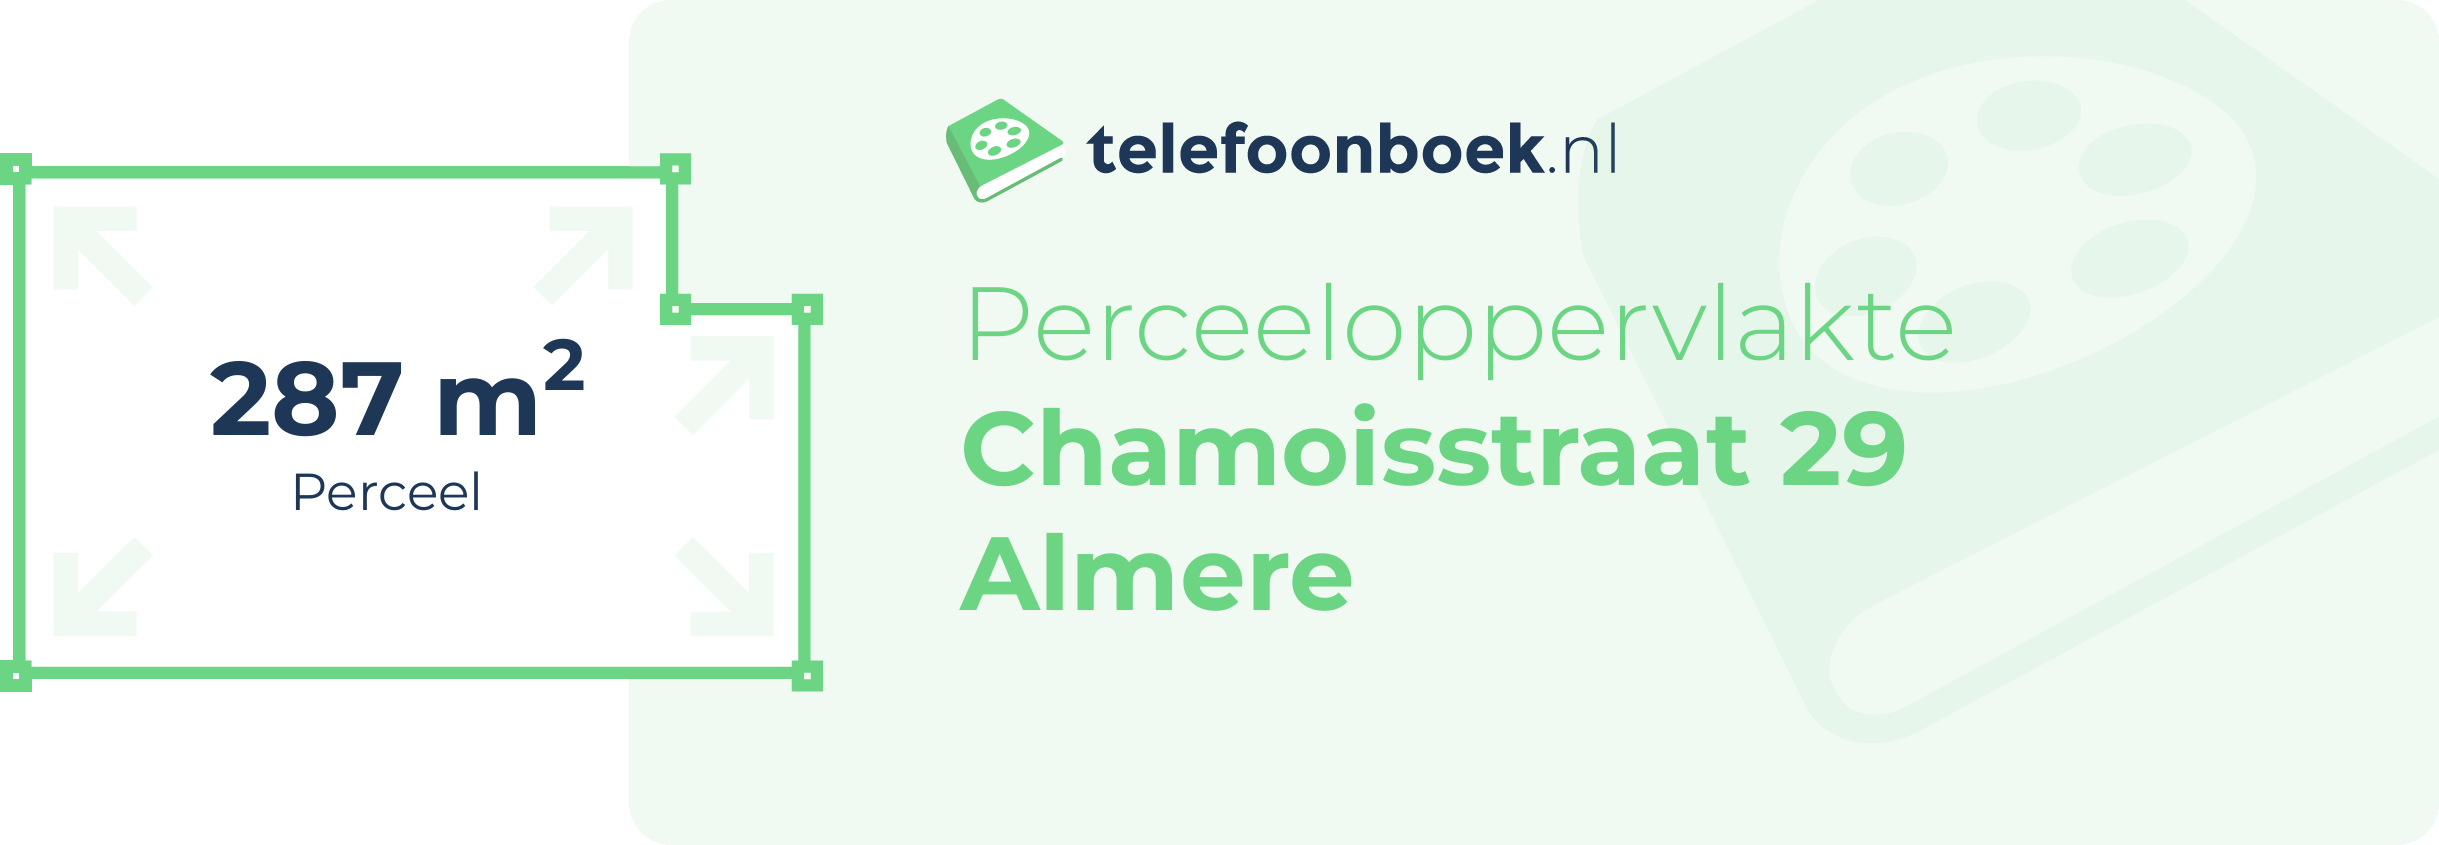 Perceeloppervlakte Chamoisstraat 29 Almere